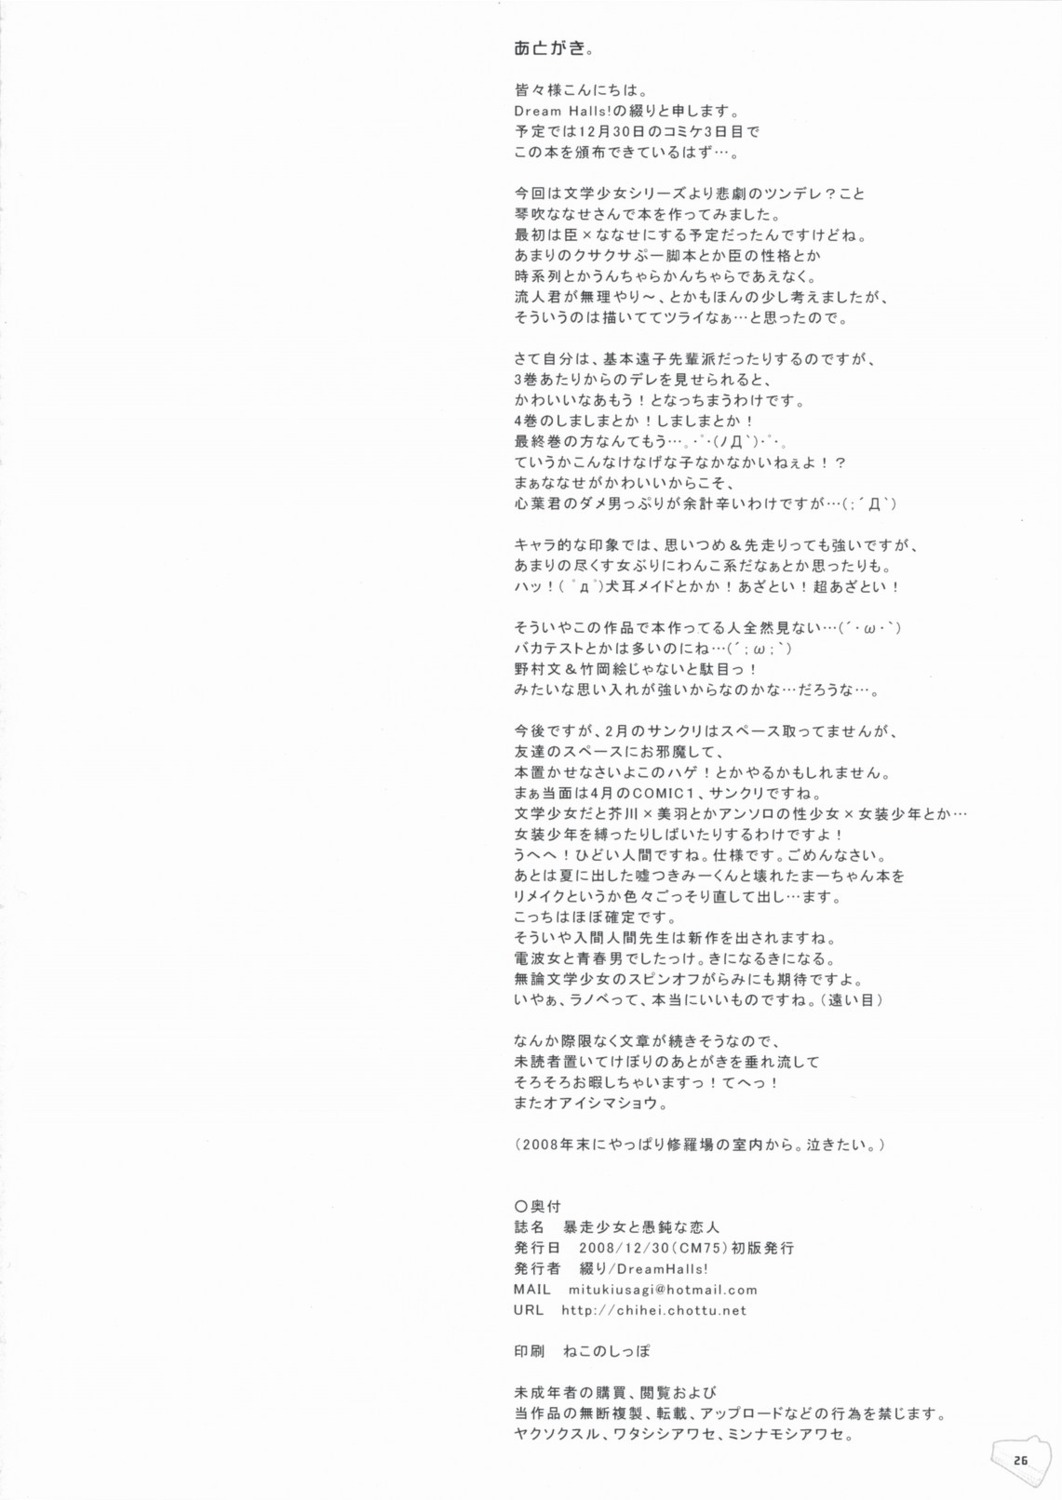 bungaku_shoujo dream_halls text tsuzuri